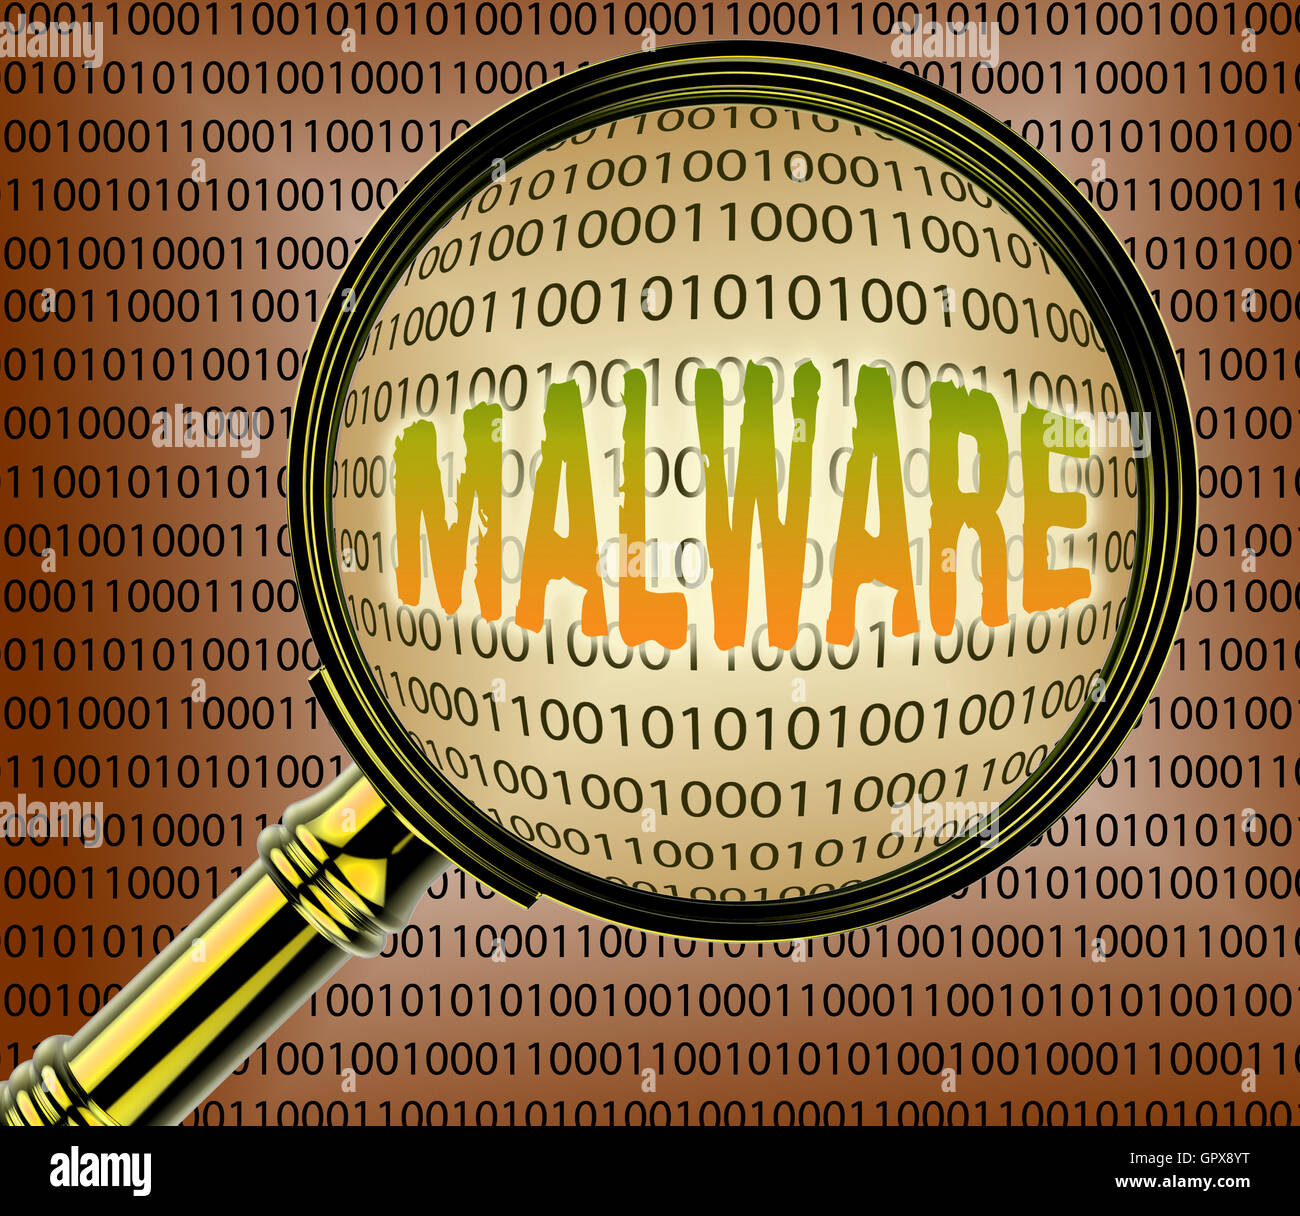 I dati che indicano il Malware WWW on-line e la comunicazione Foto Stock